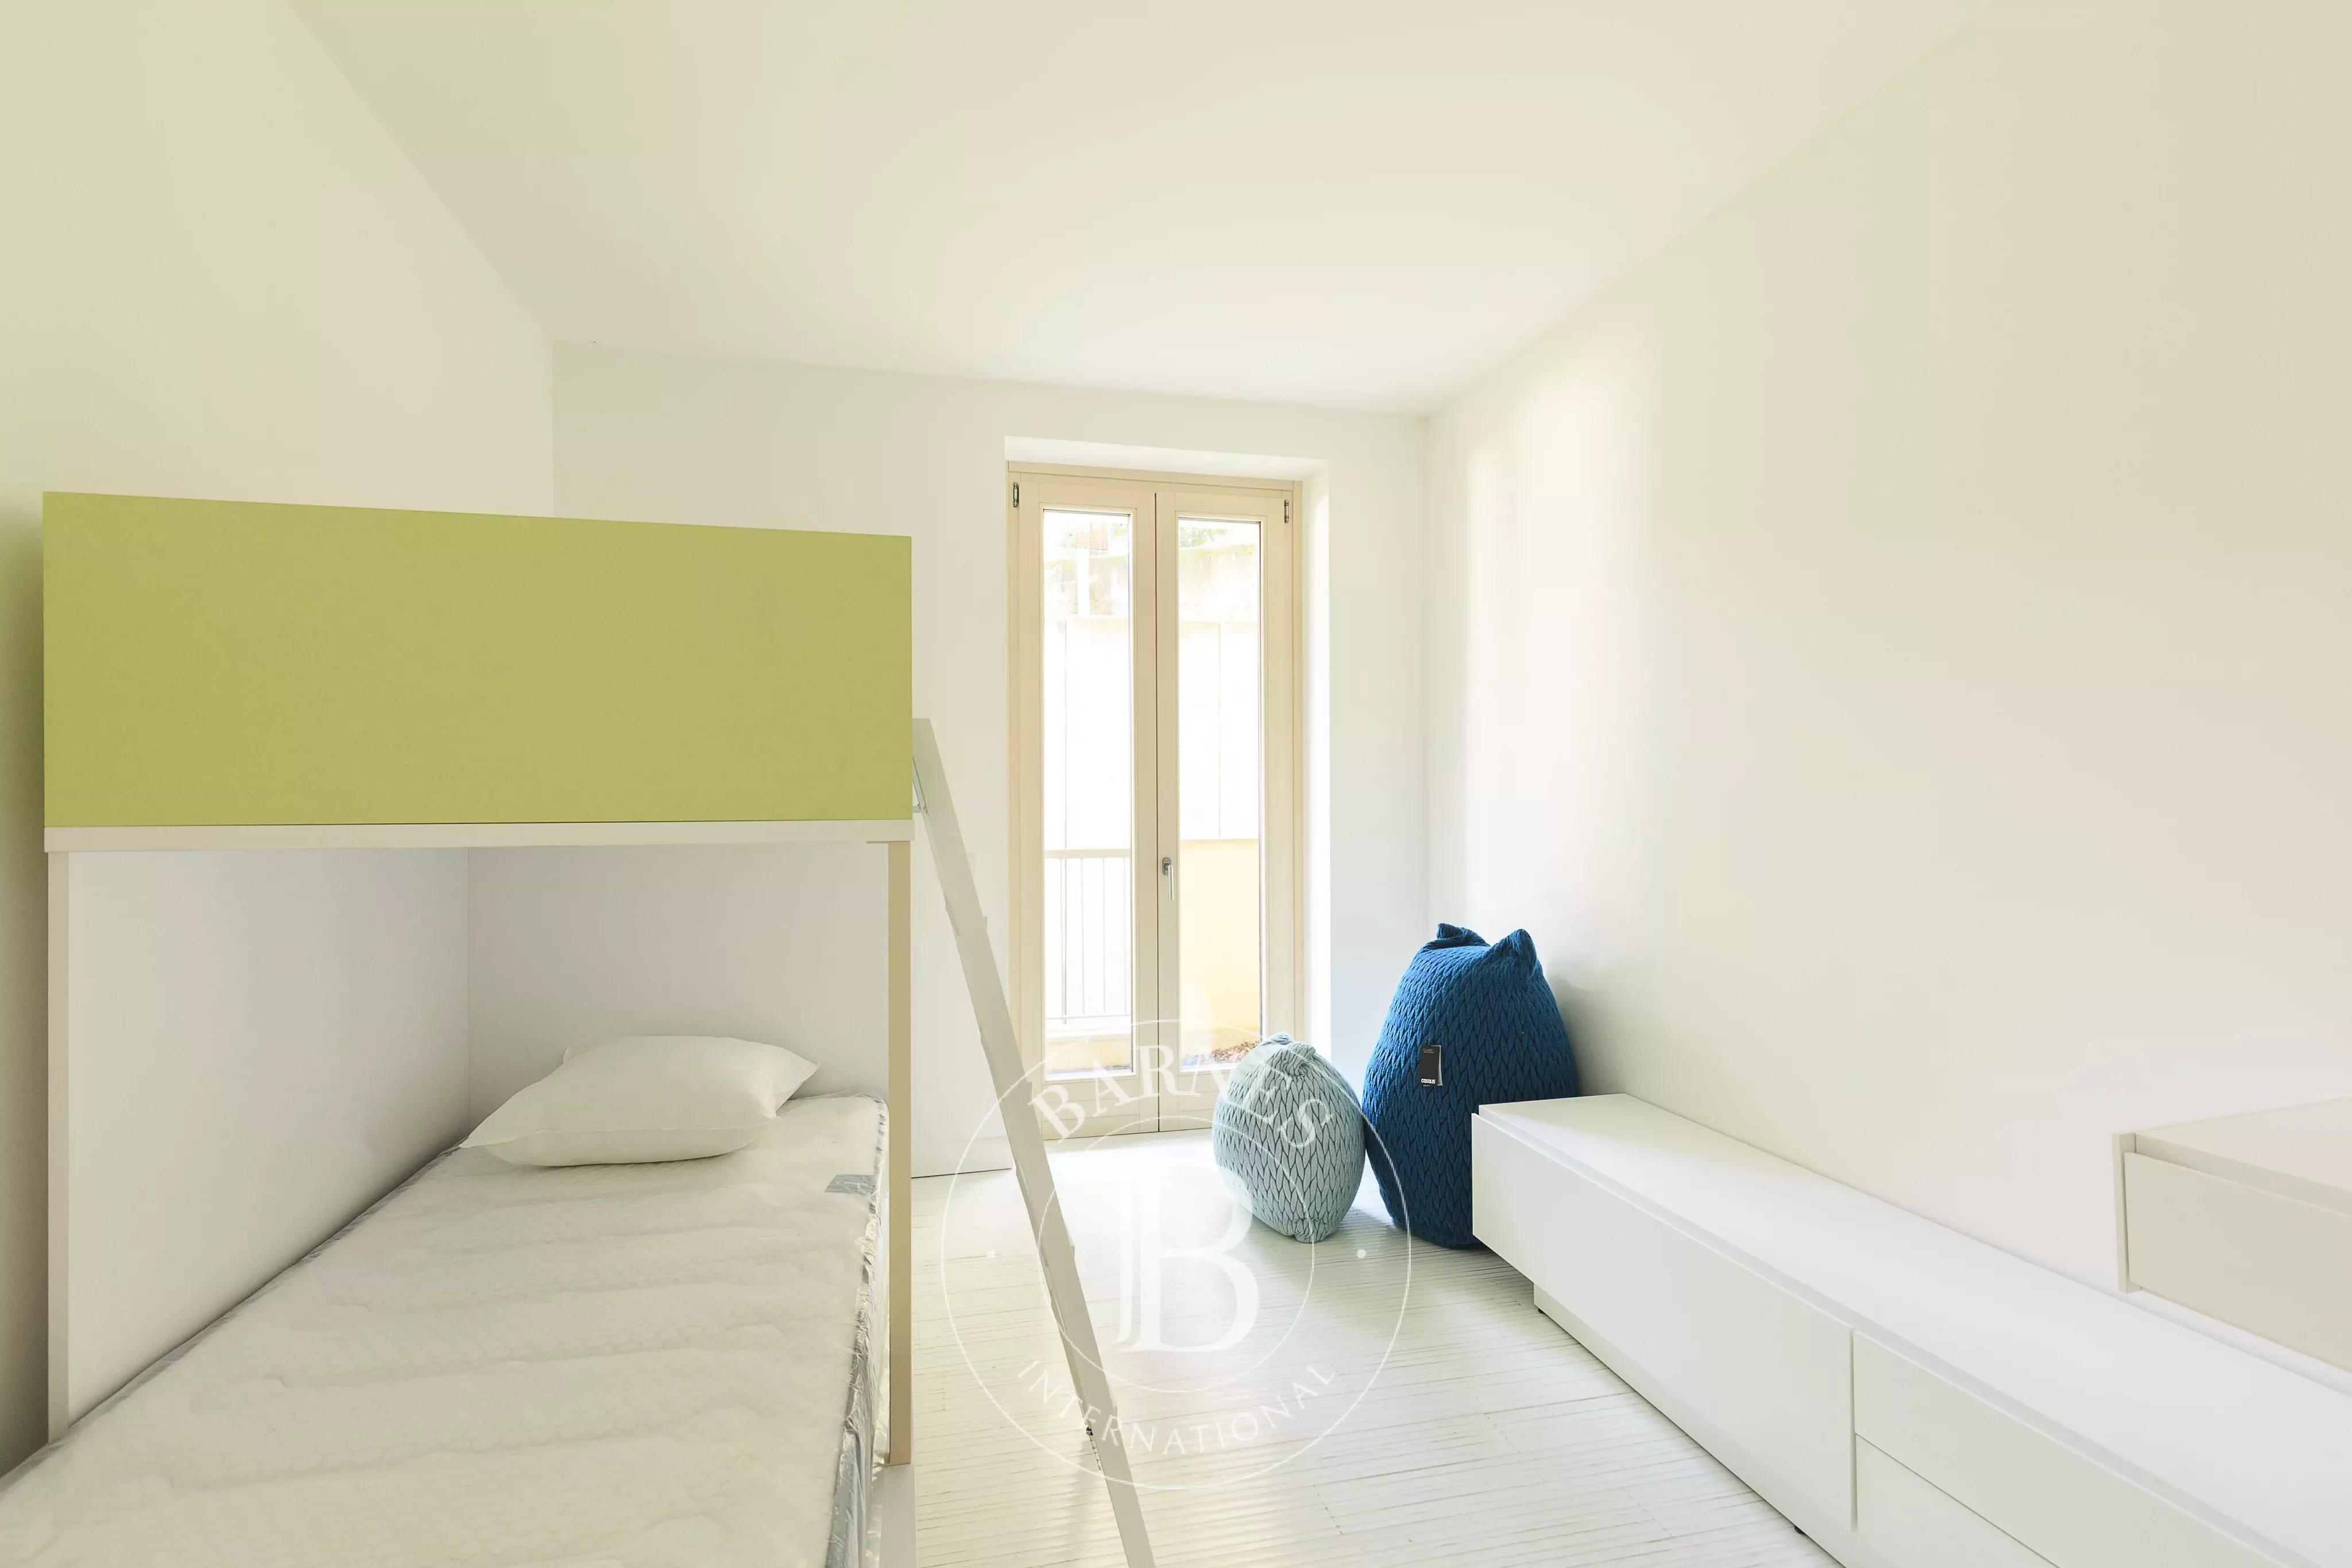 Duplex multi-room apartment in Campione D'Italia - picture 19 title=